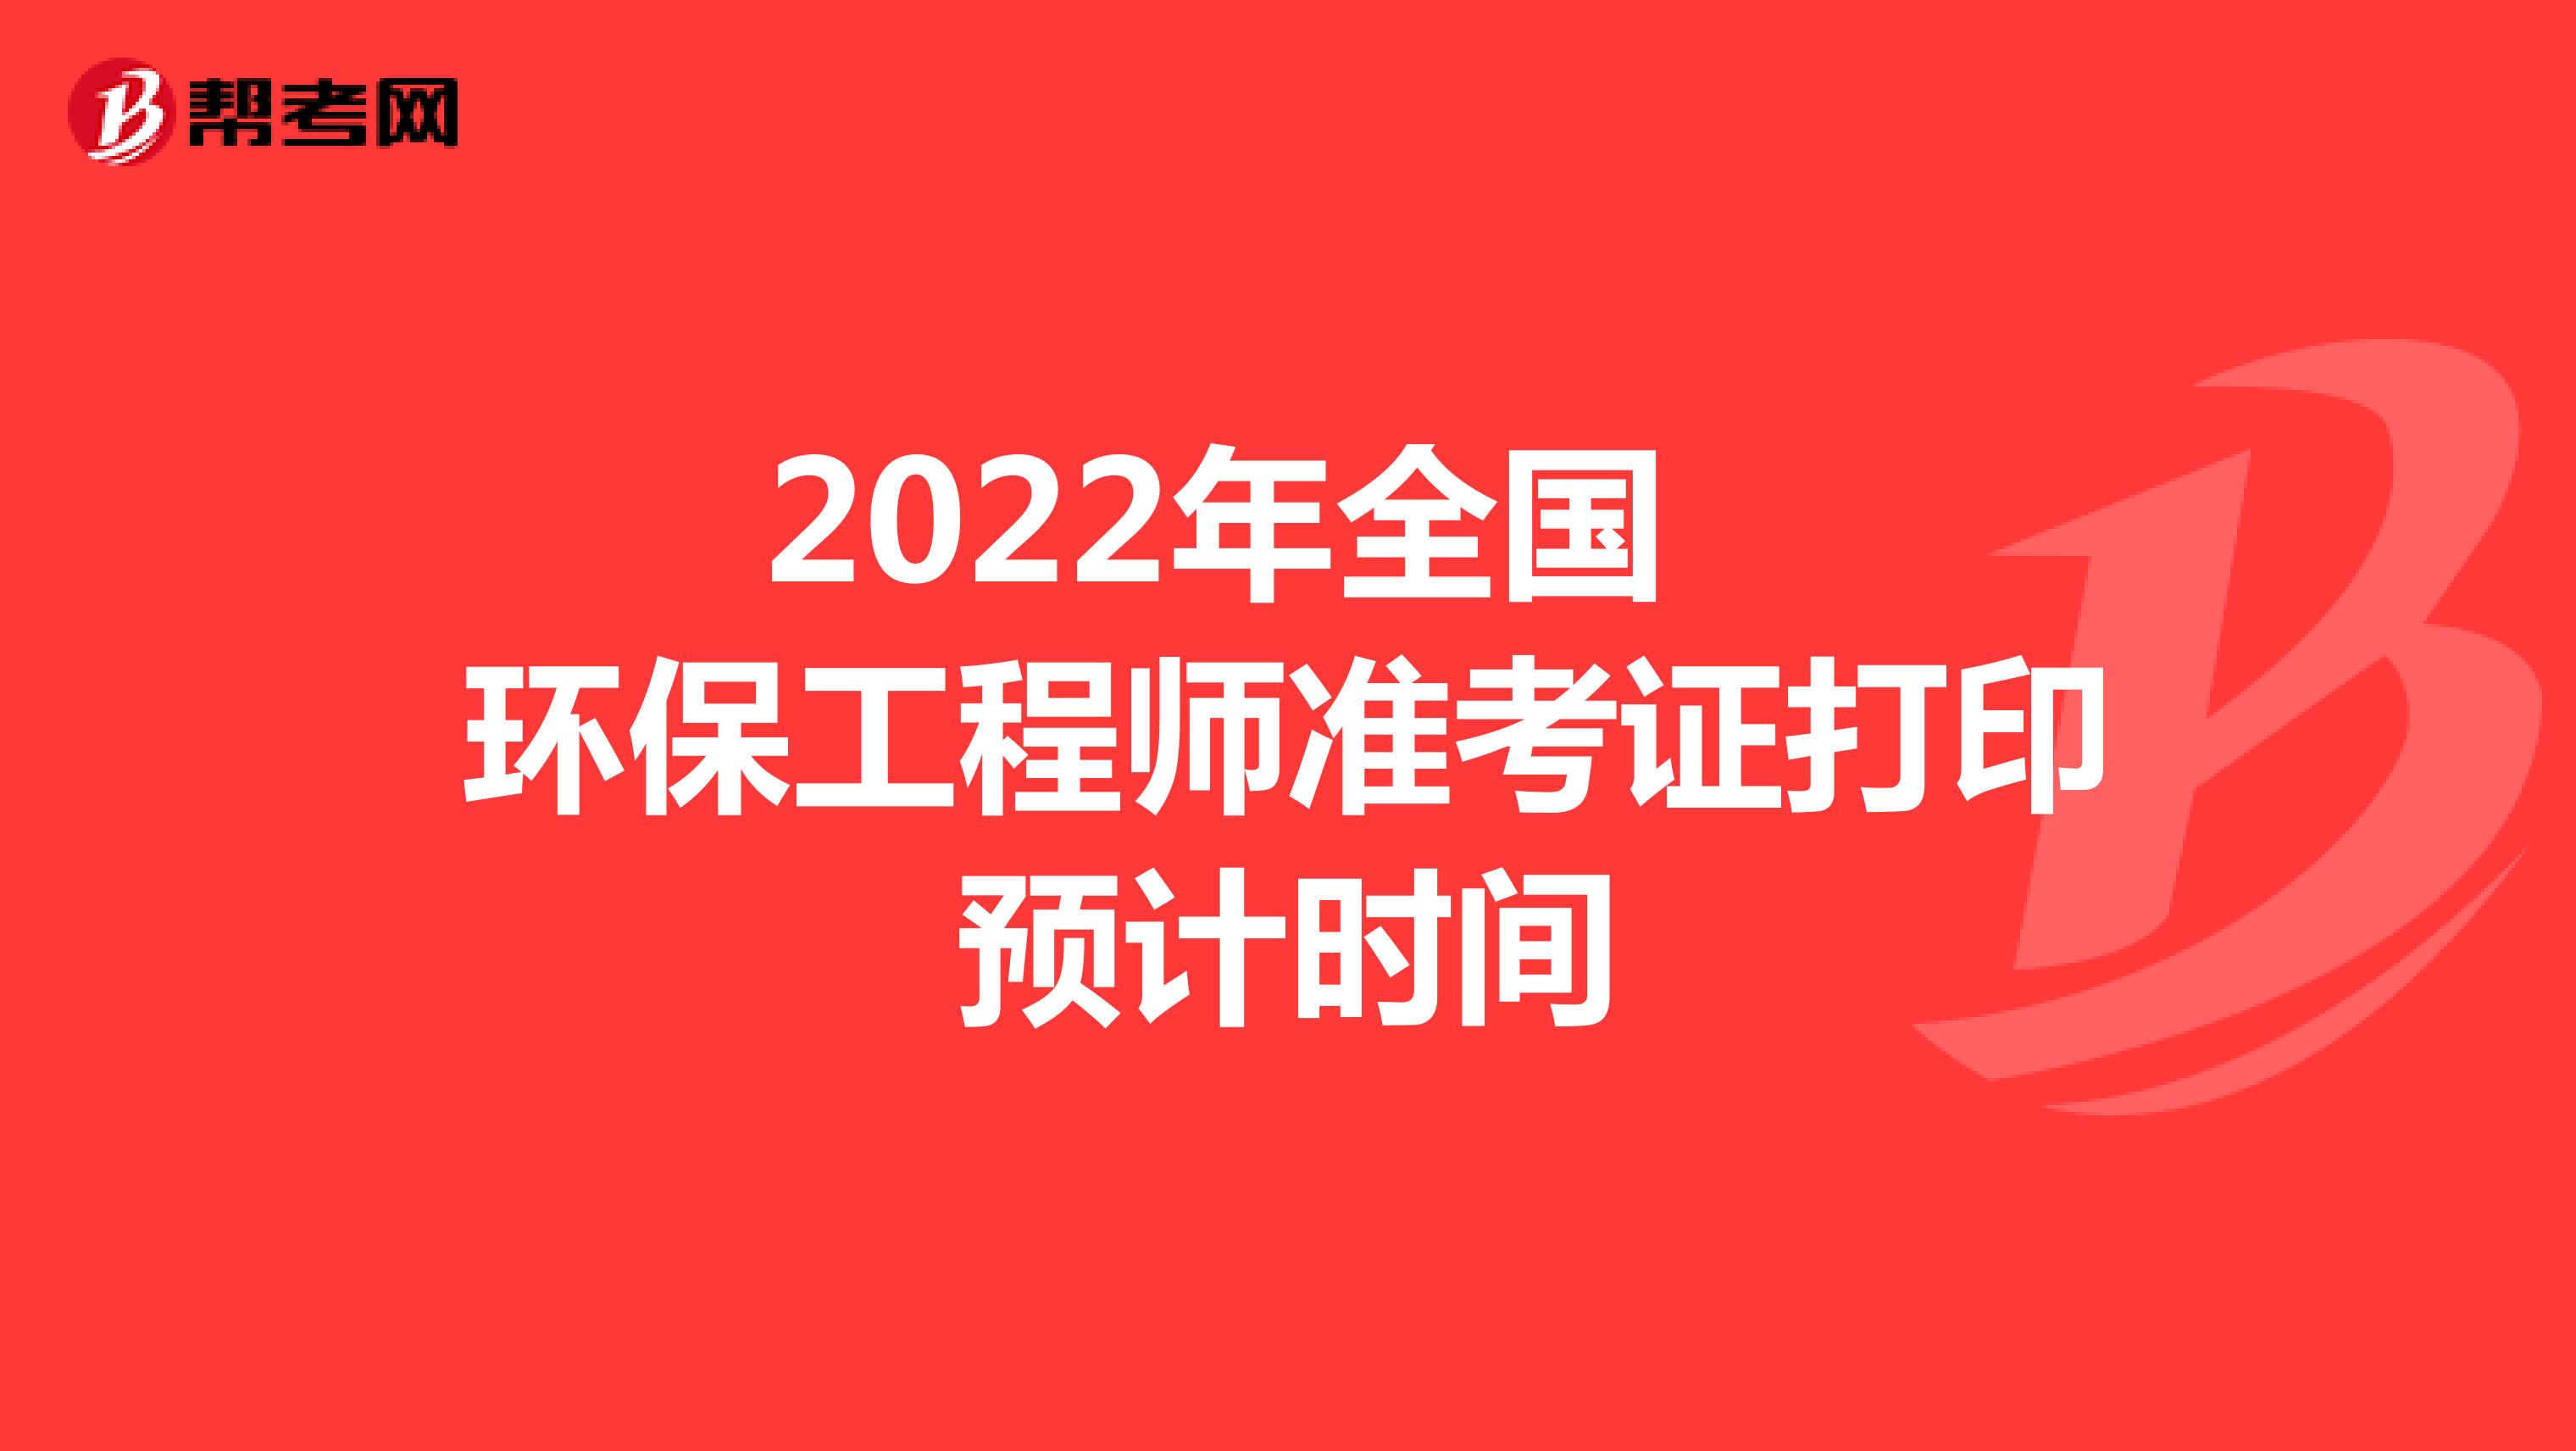 2022年全国环保工程师准考证打印预计时间